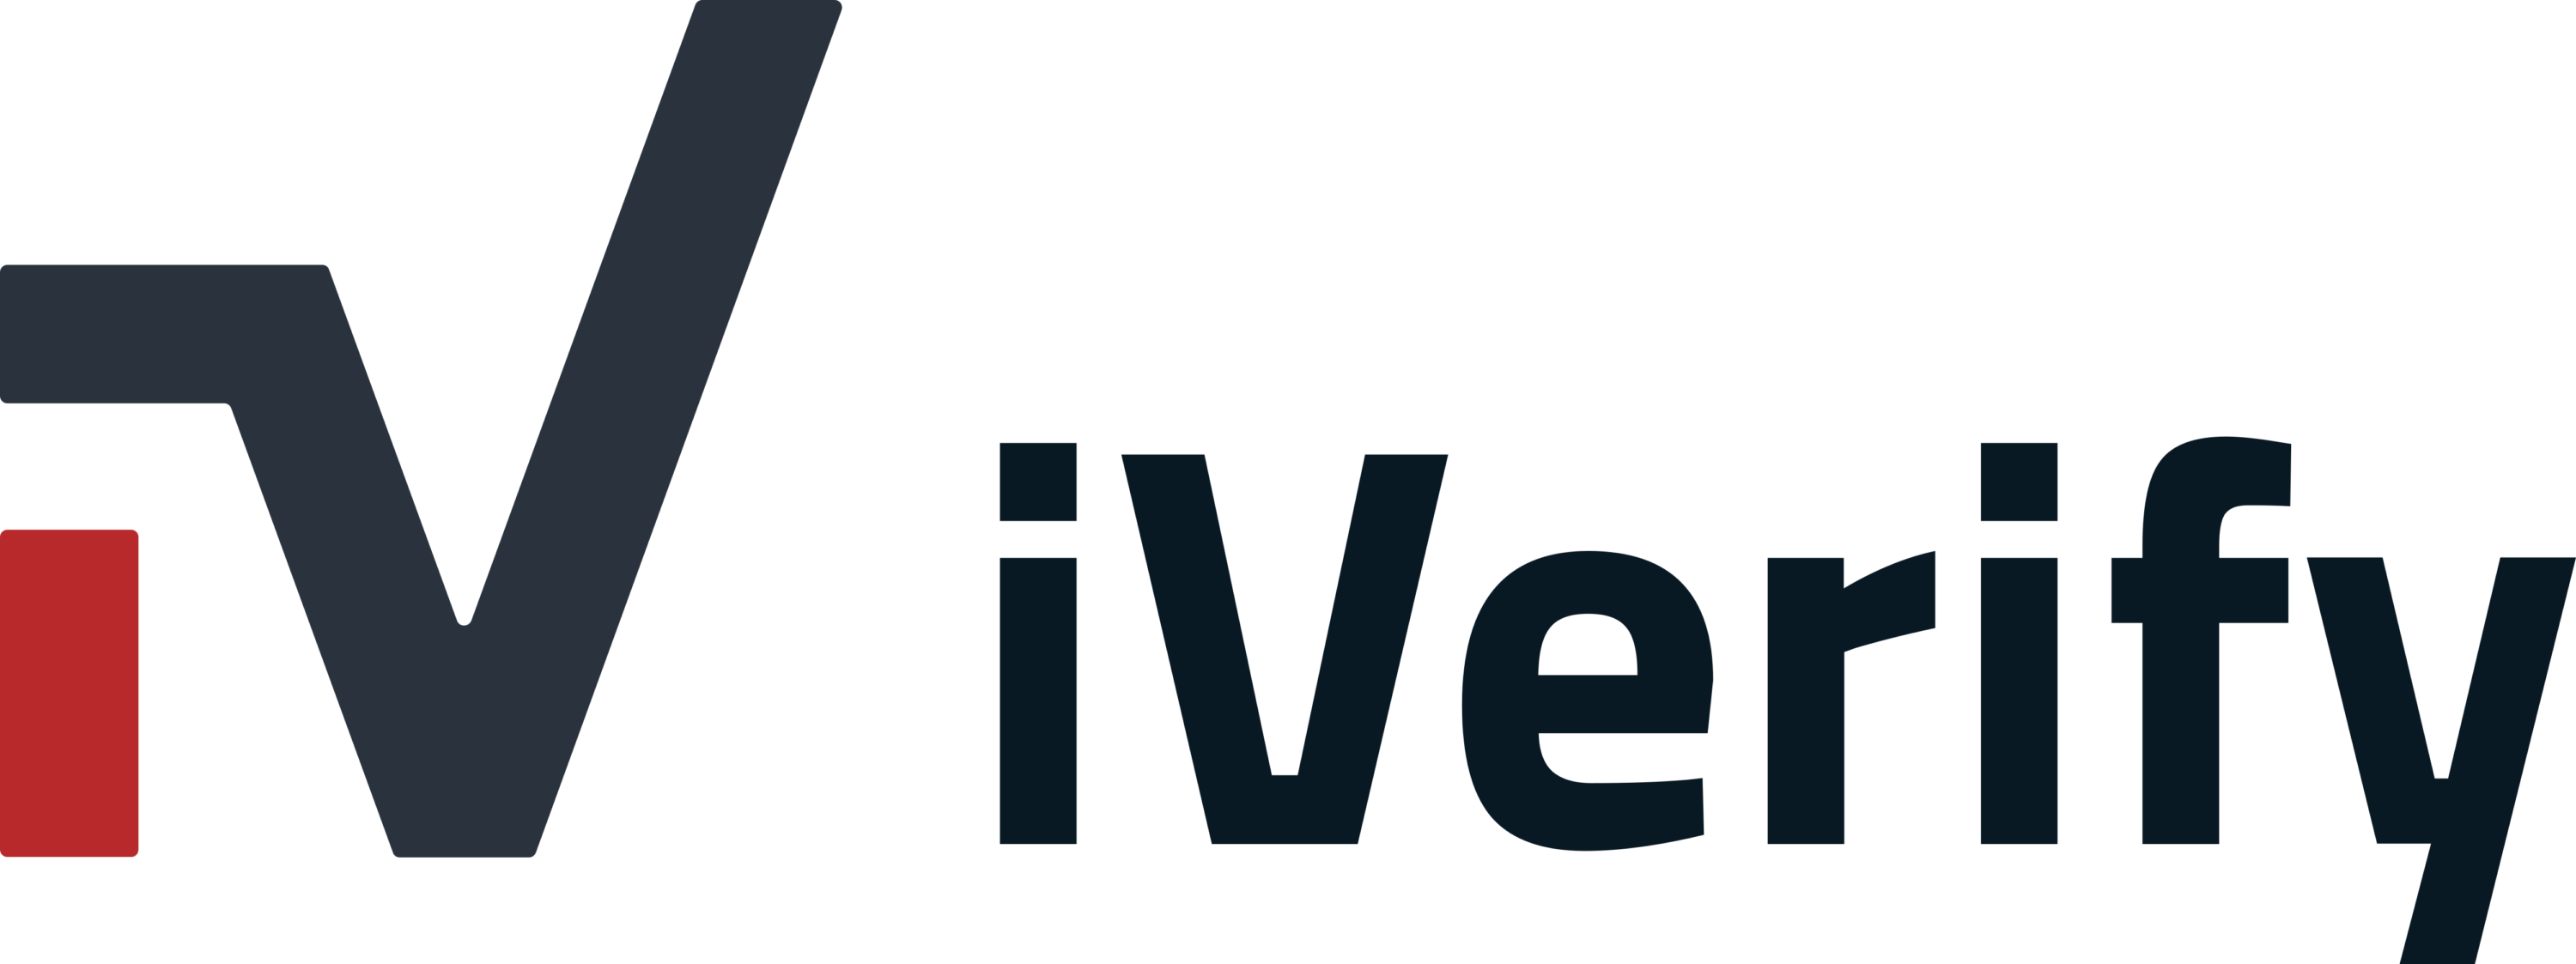 iVerify Logo